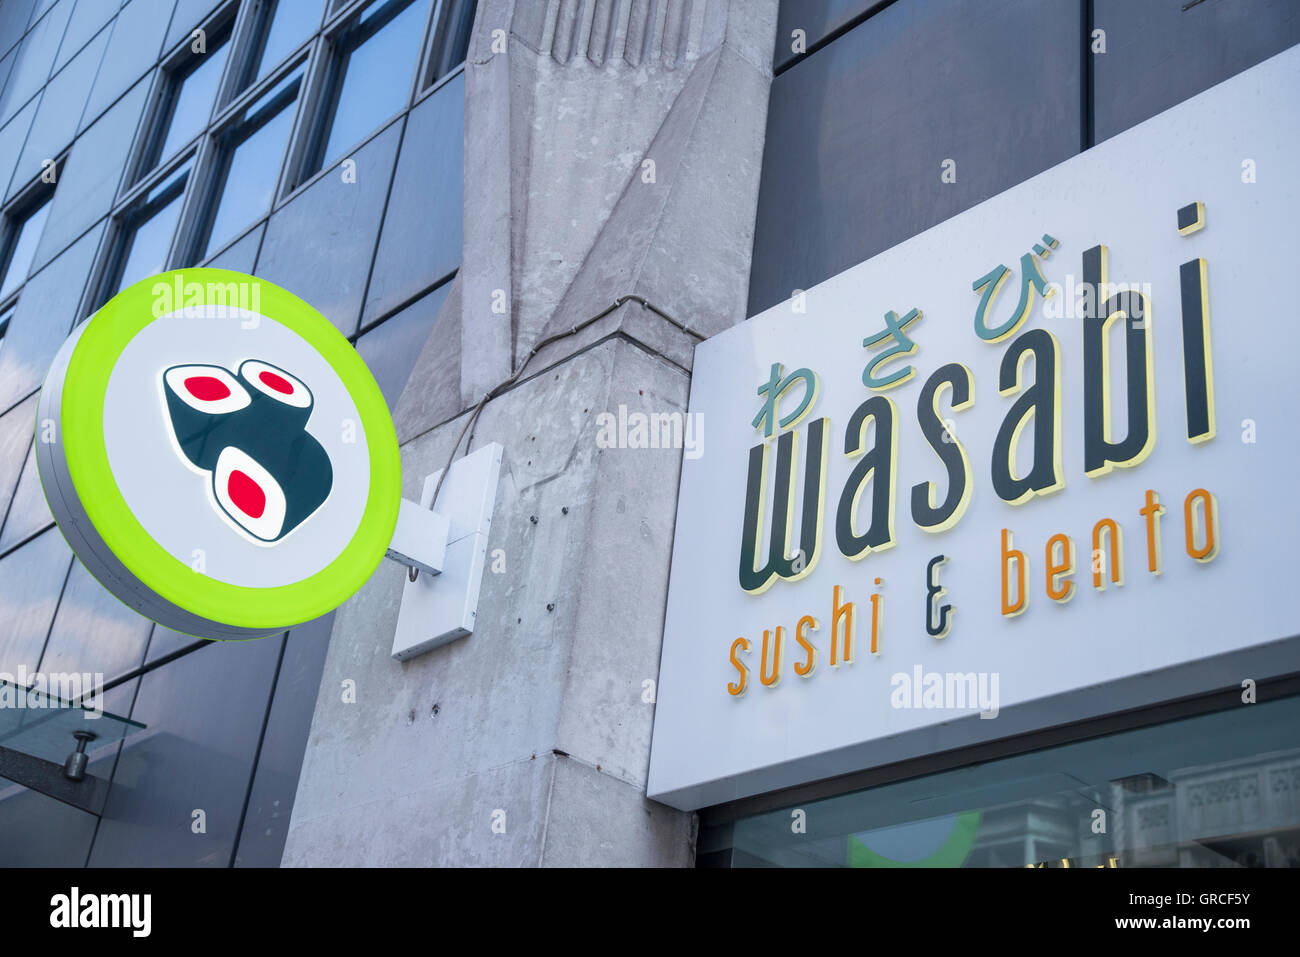 Wasabi Sushi & Bento giapponese ristorante cafe Central London, Regno Unito Foto Stock